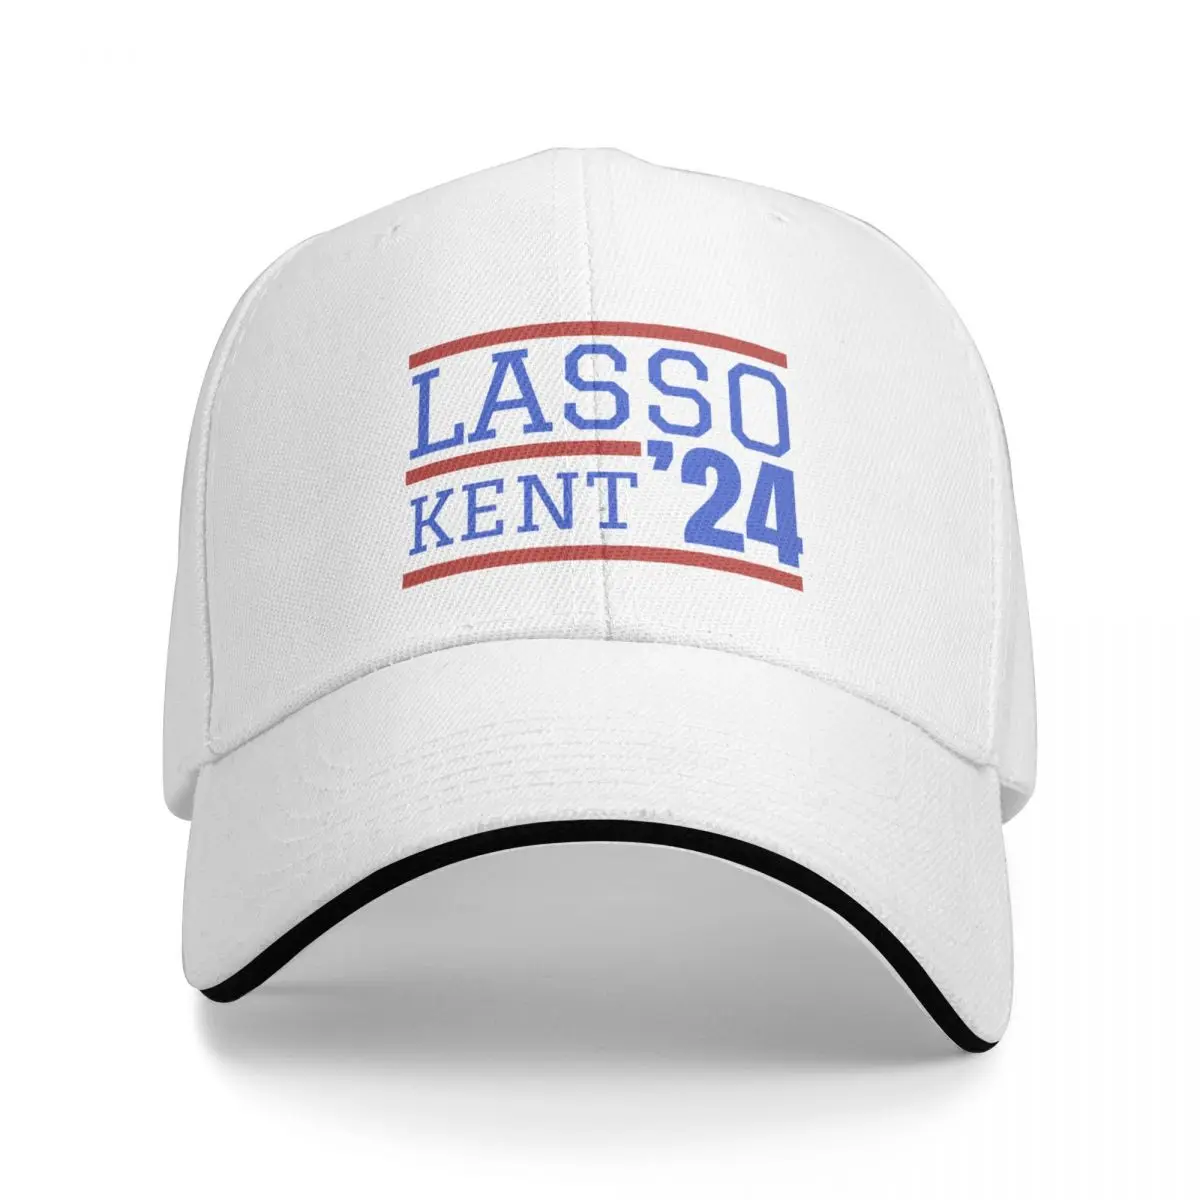 

Lasso Kent 2024 Cap Baseball Cap beach hat gentleman hat women's hats for the sun Men's